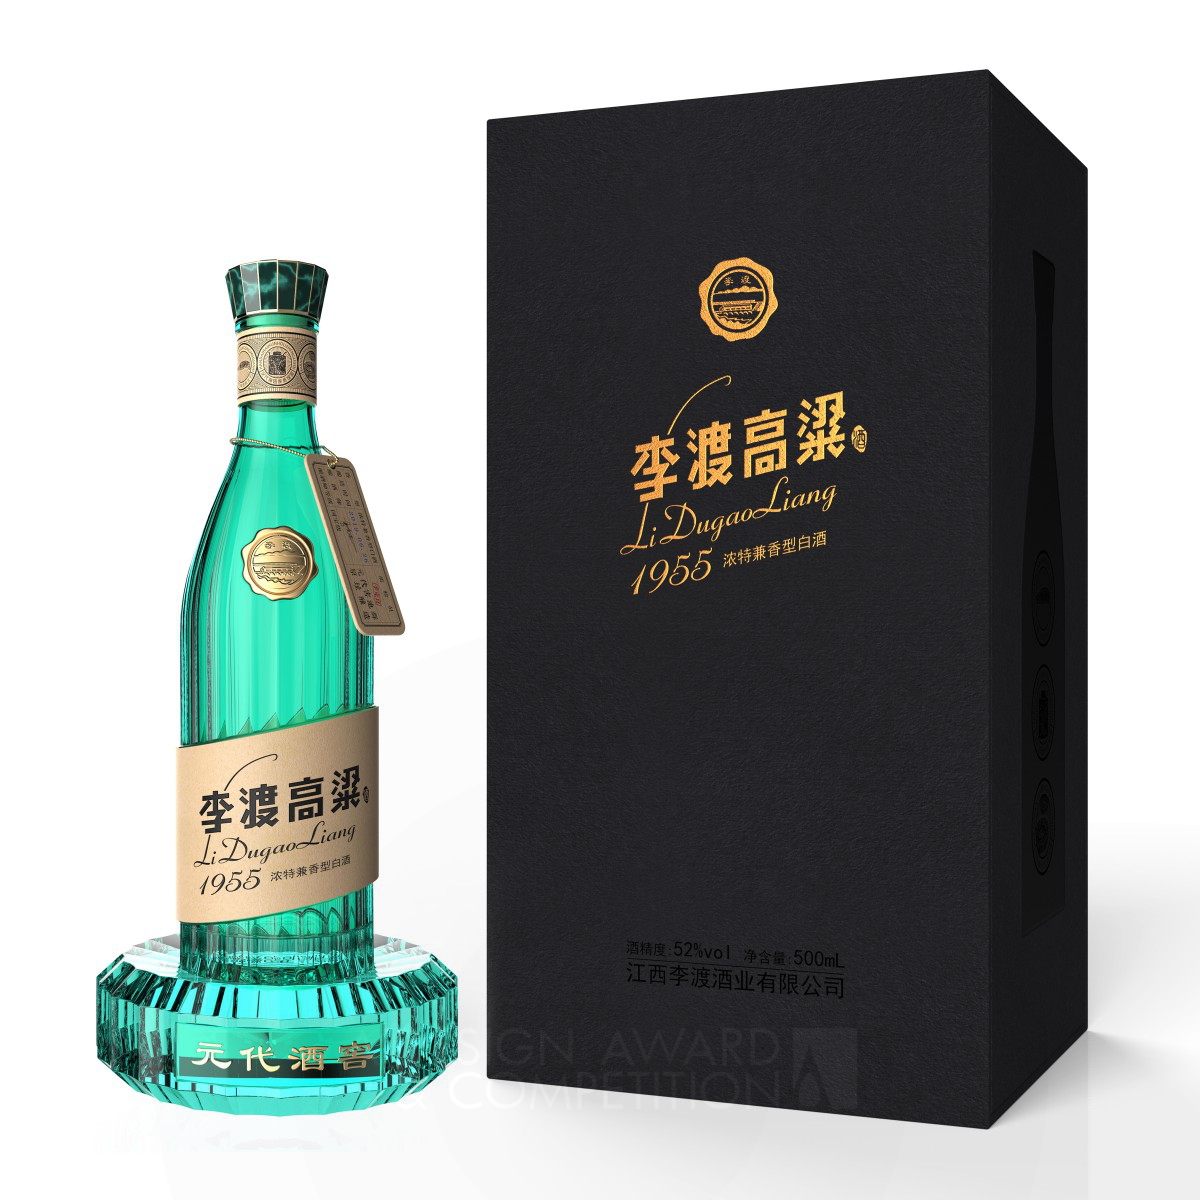 Lidu Sorghum Baijiu Beverage by Wen Liu and Bo Zheng Iron Packaging Design Award Winner 2020 